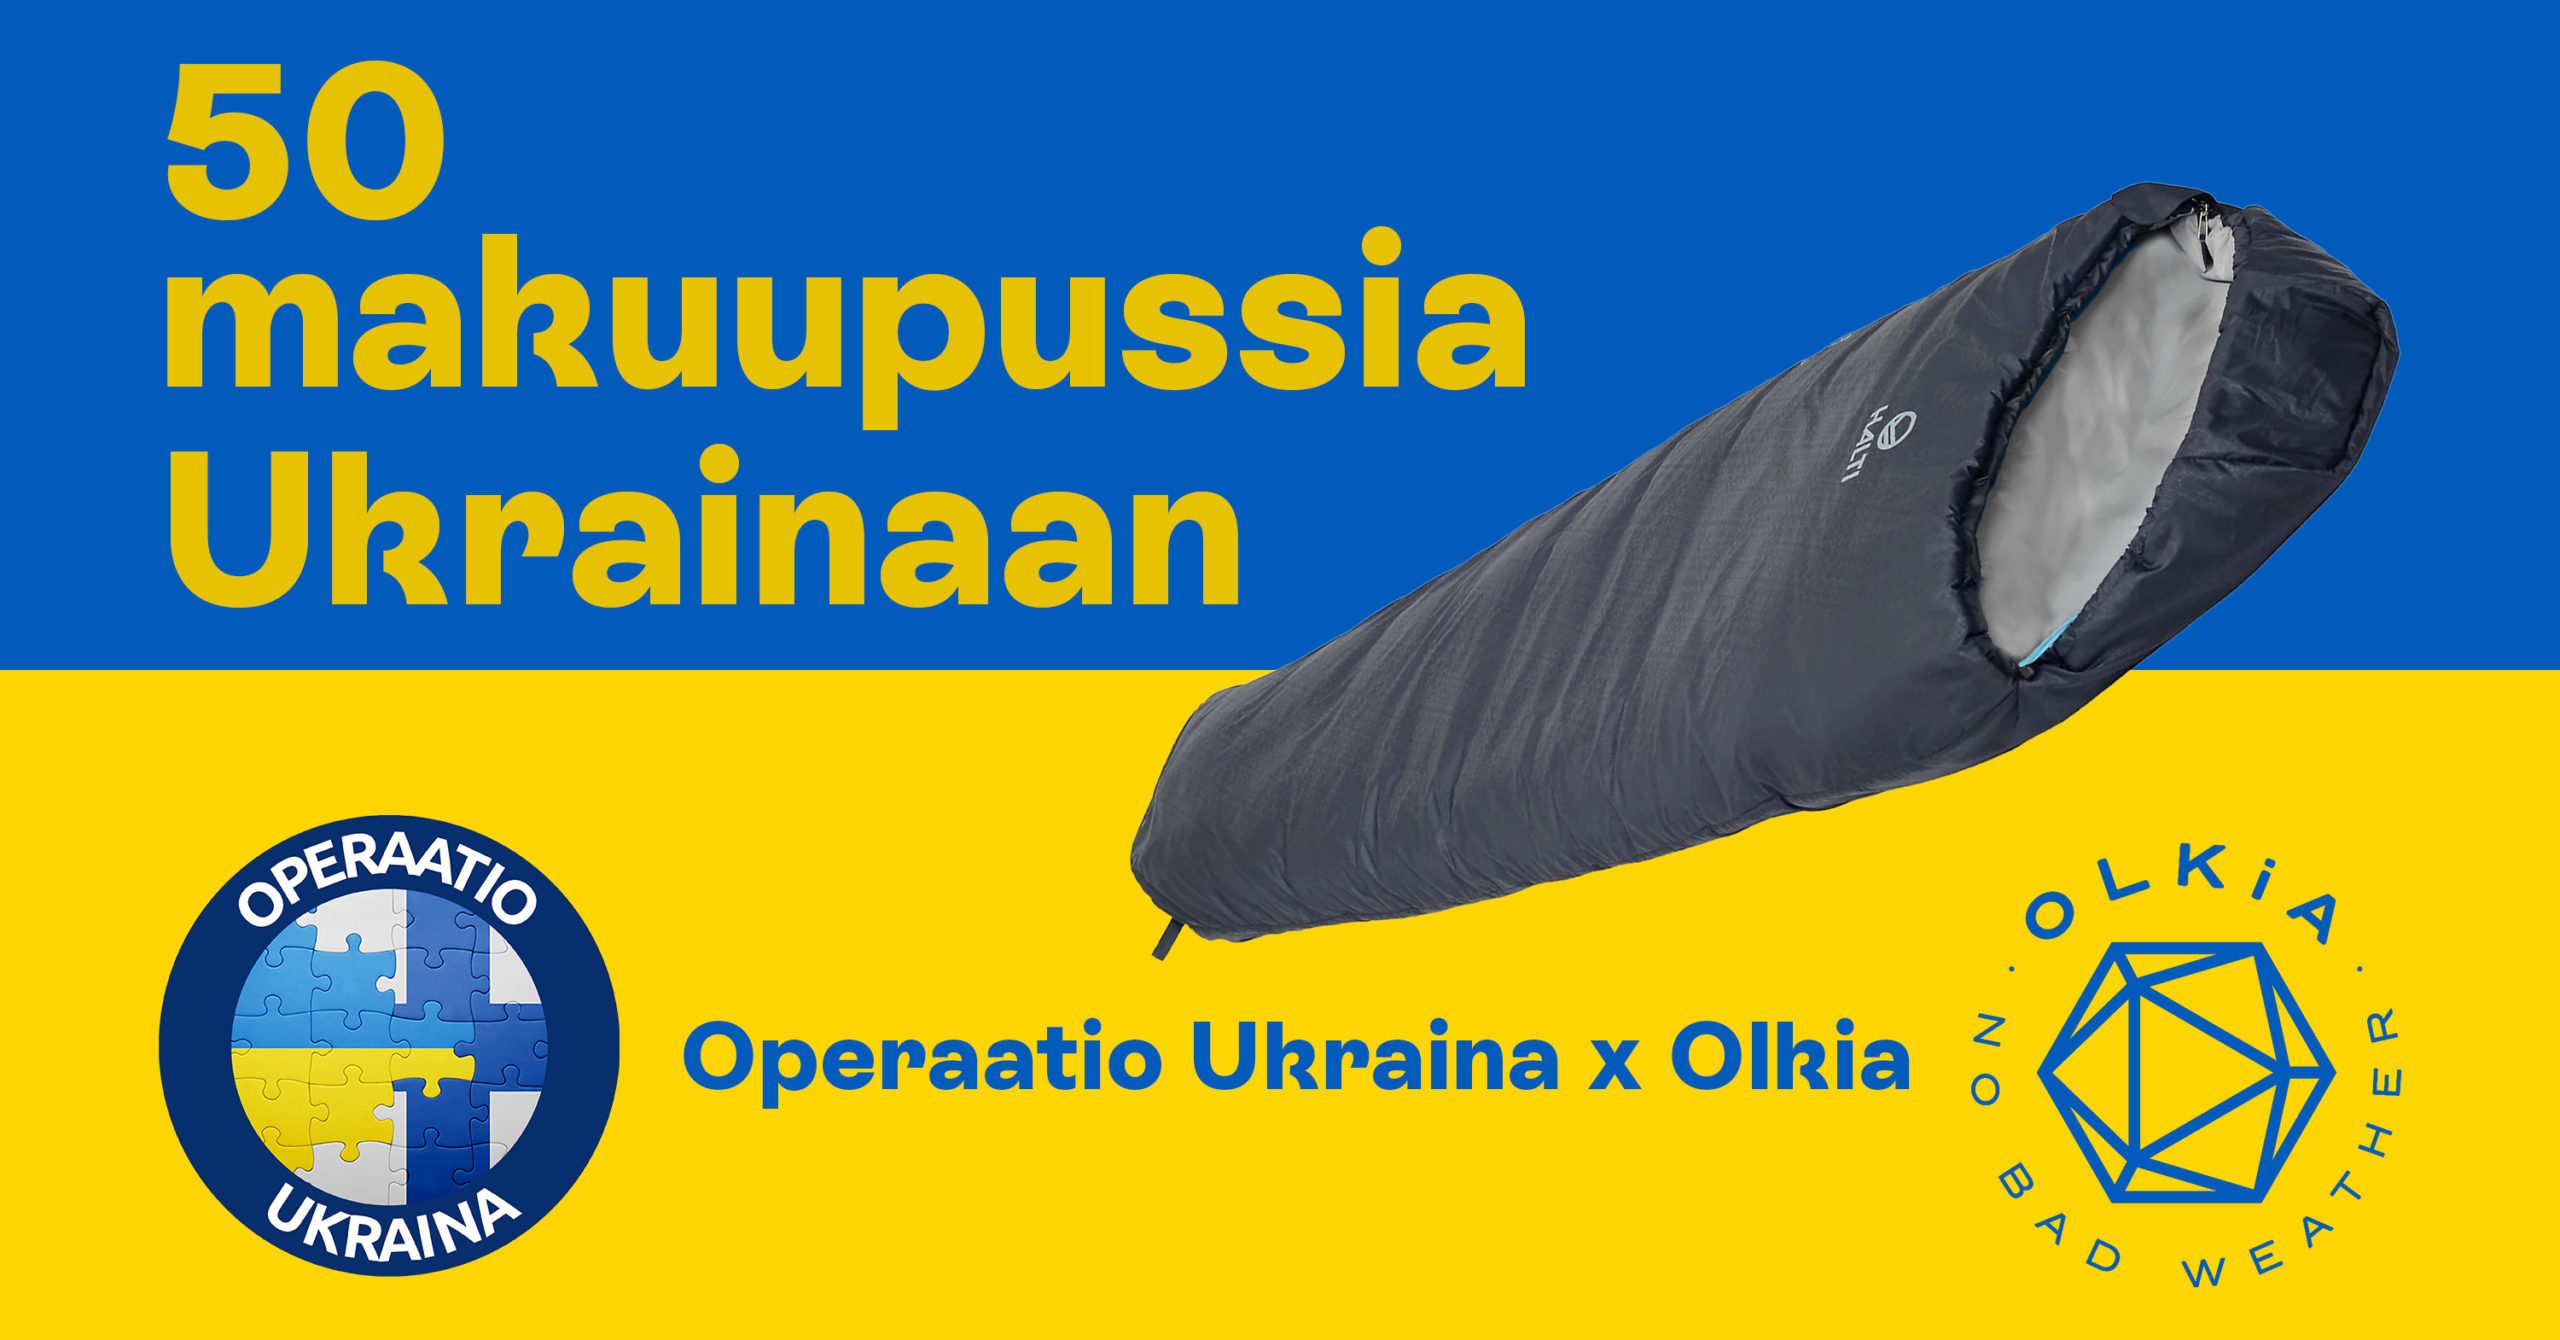 50 makuupussia Ukrainaan. Kuvassa makuupussi ja järjestäjien logot.